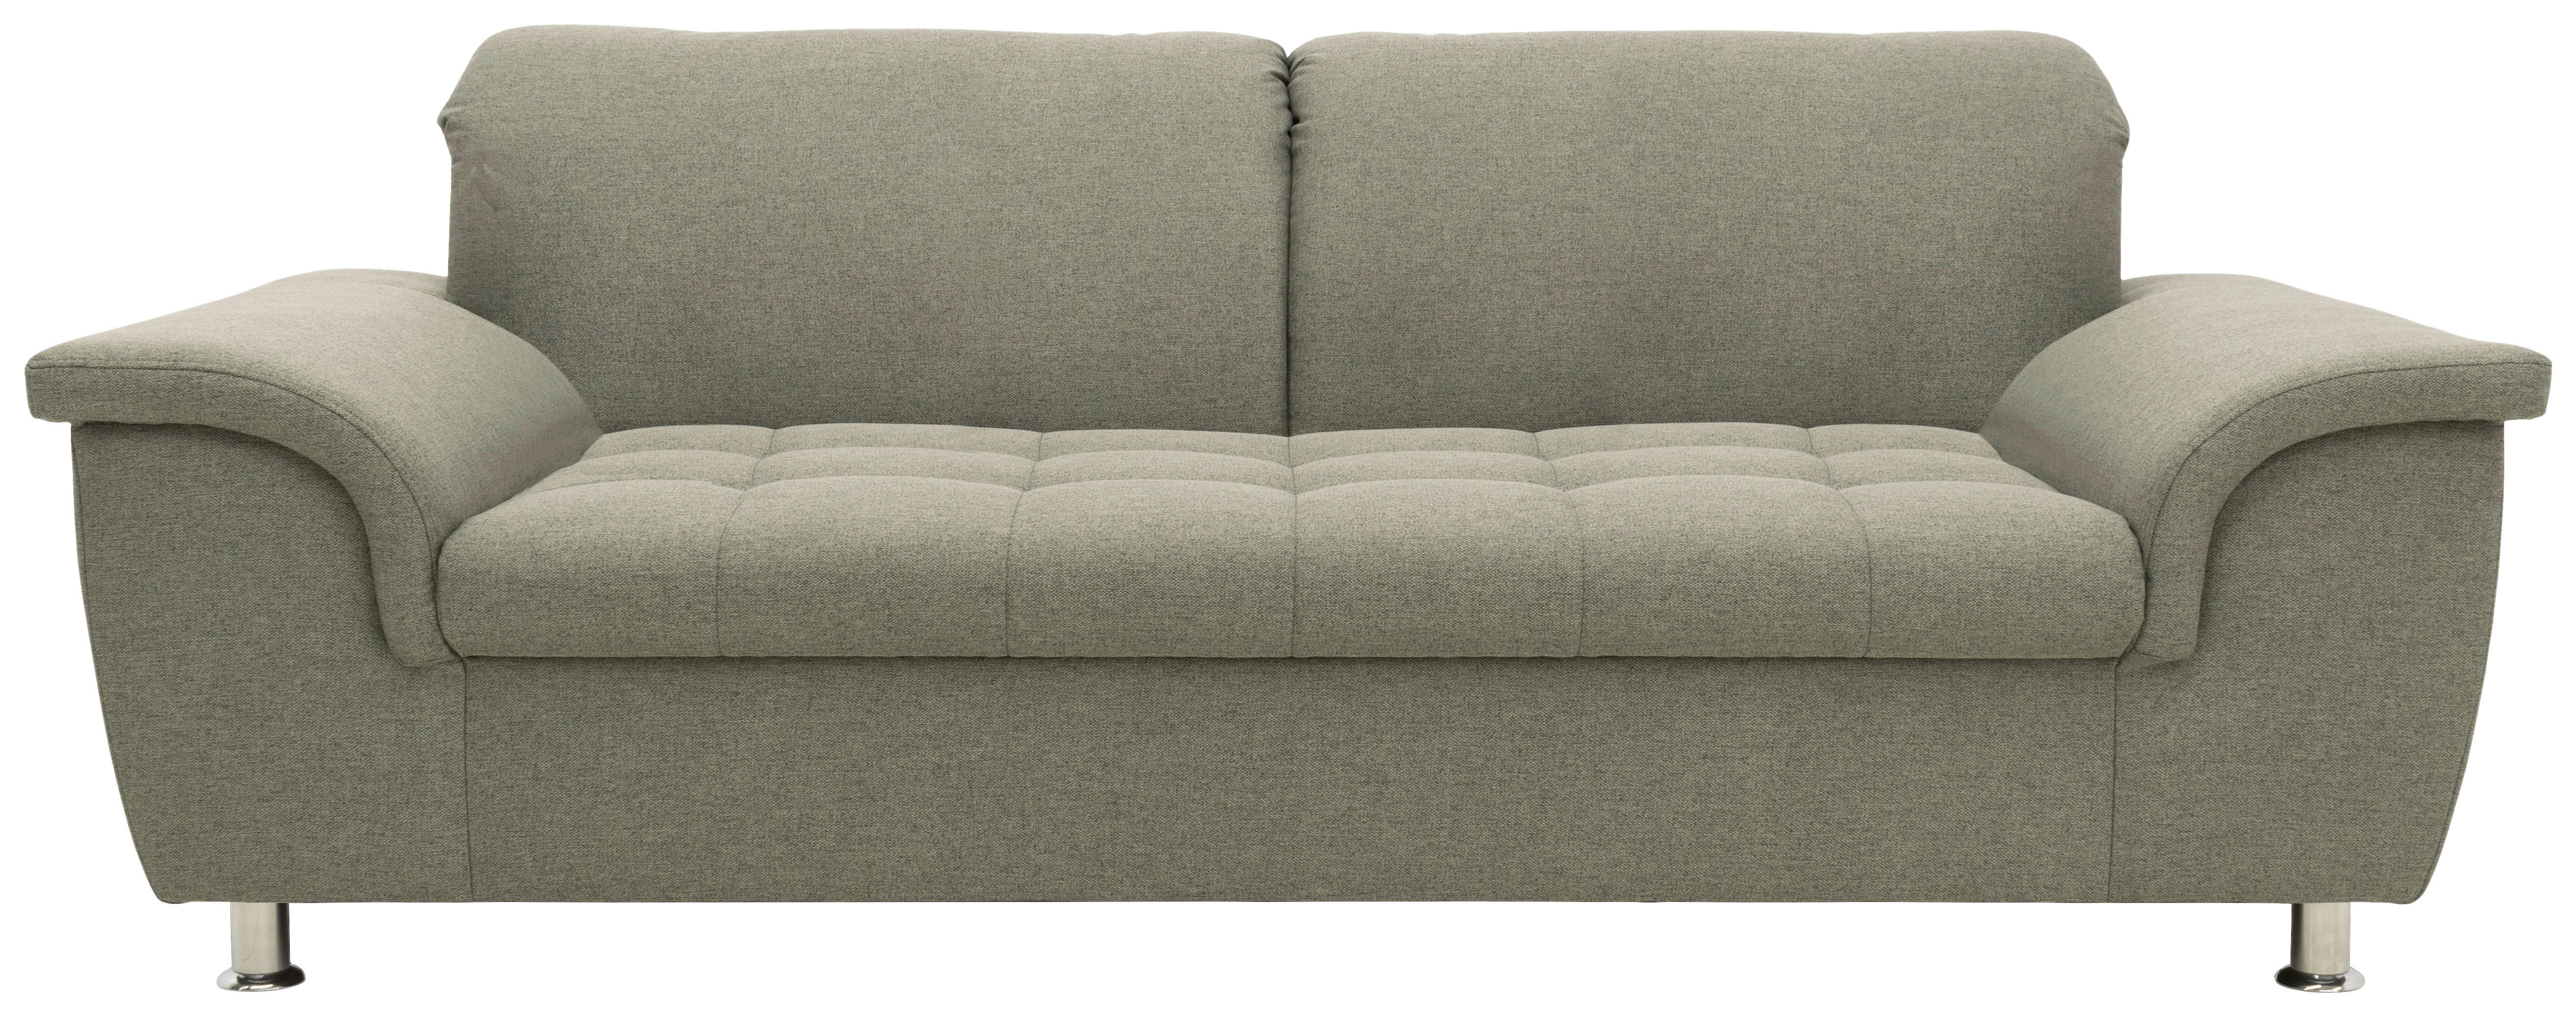 2,5-Sitzer mit Funktion Webstoff Silberfarben  - Chromfarben/Silberfarben, KONVENTIONELL, Textil/Metall (210/81/105cm)